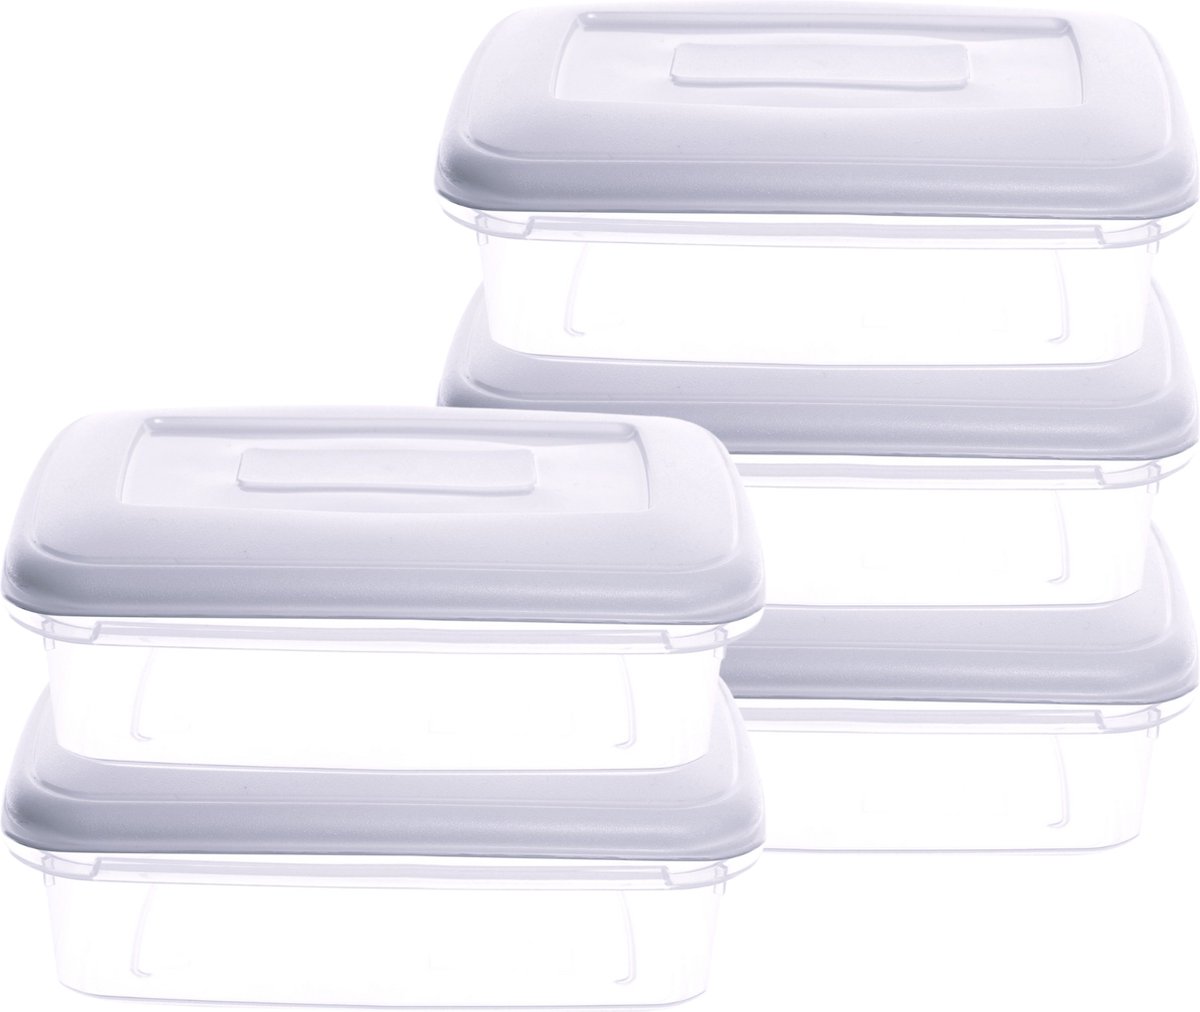 Vershoudbakjes - Mealprep dozen - 1.5 Liter - Wit Deksel - (Set van 5)